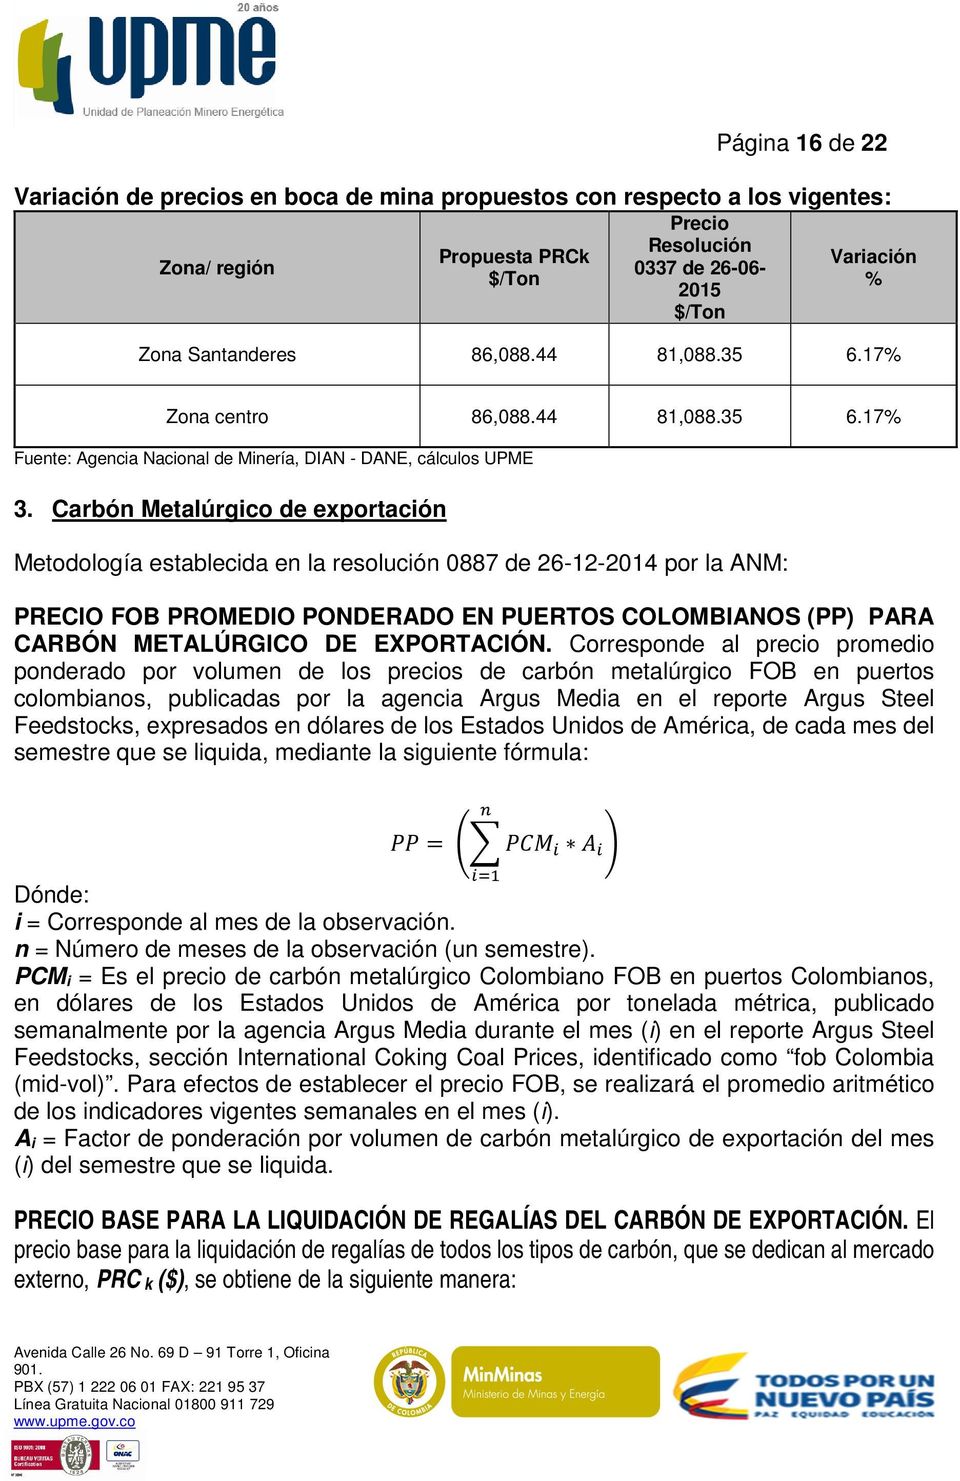 Carbón Metalúrgico de exportación Metodología establecida en la resolución 0887 de 26-12-2014 por la ANM: PRECIO FOB PROMEDIO PONDERADO EN PUERTOS COLOMBIANOS (PP) PARA CARBÓN METALÚRGICO DE